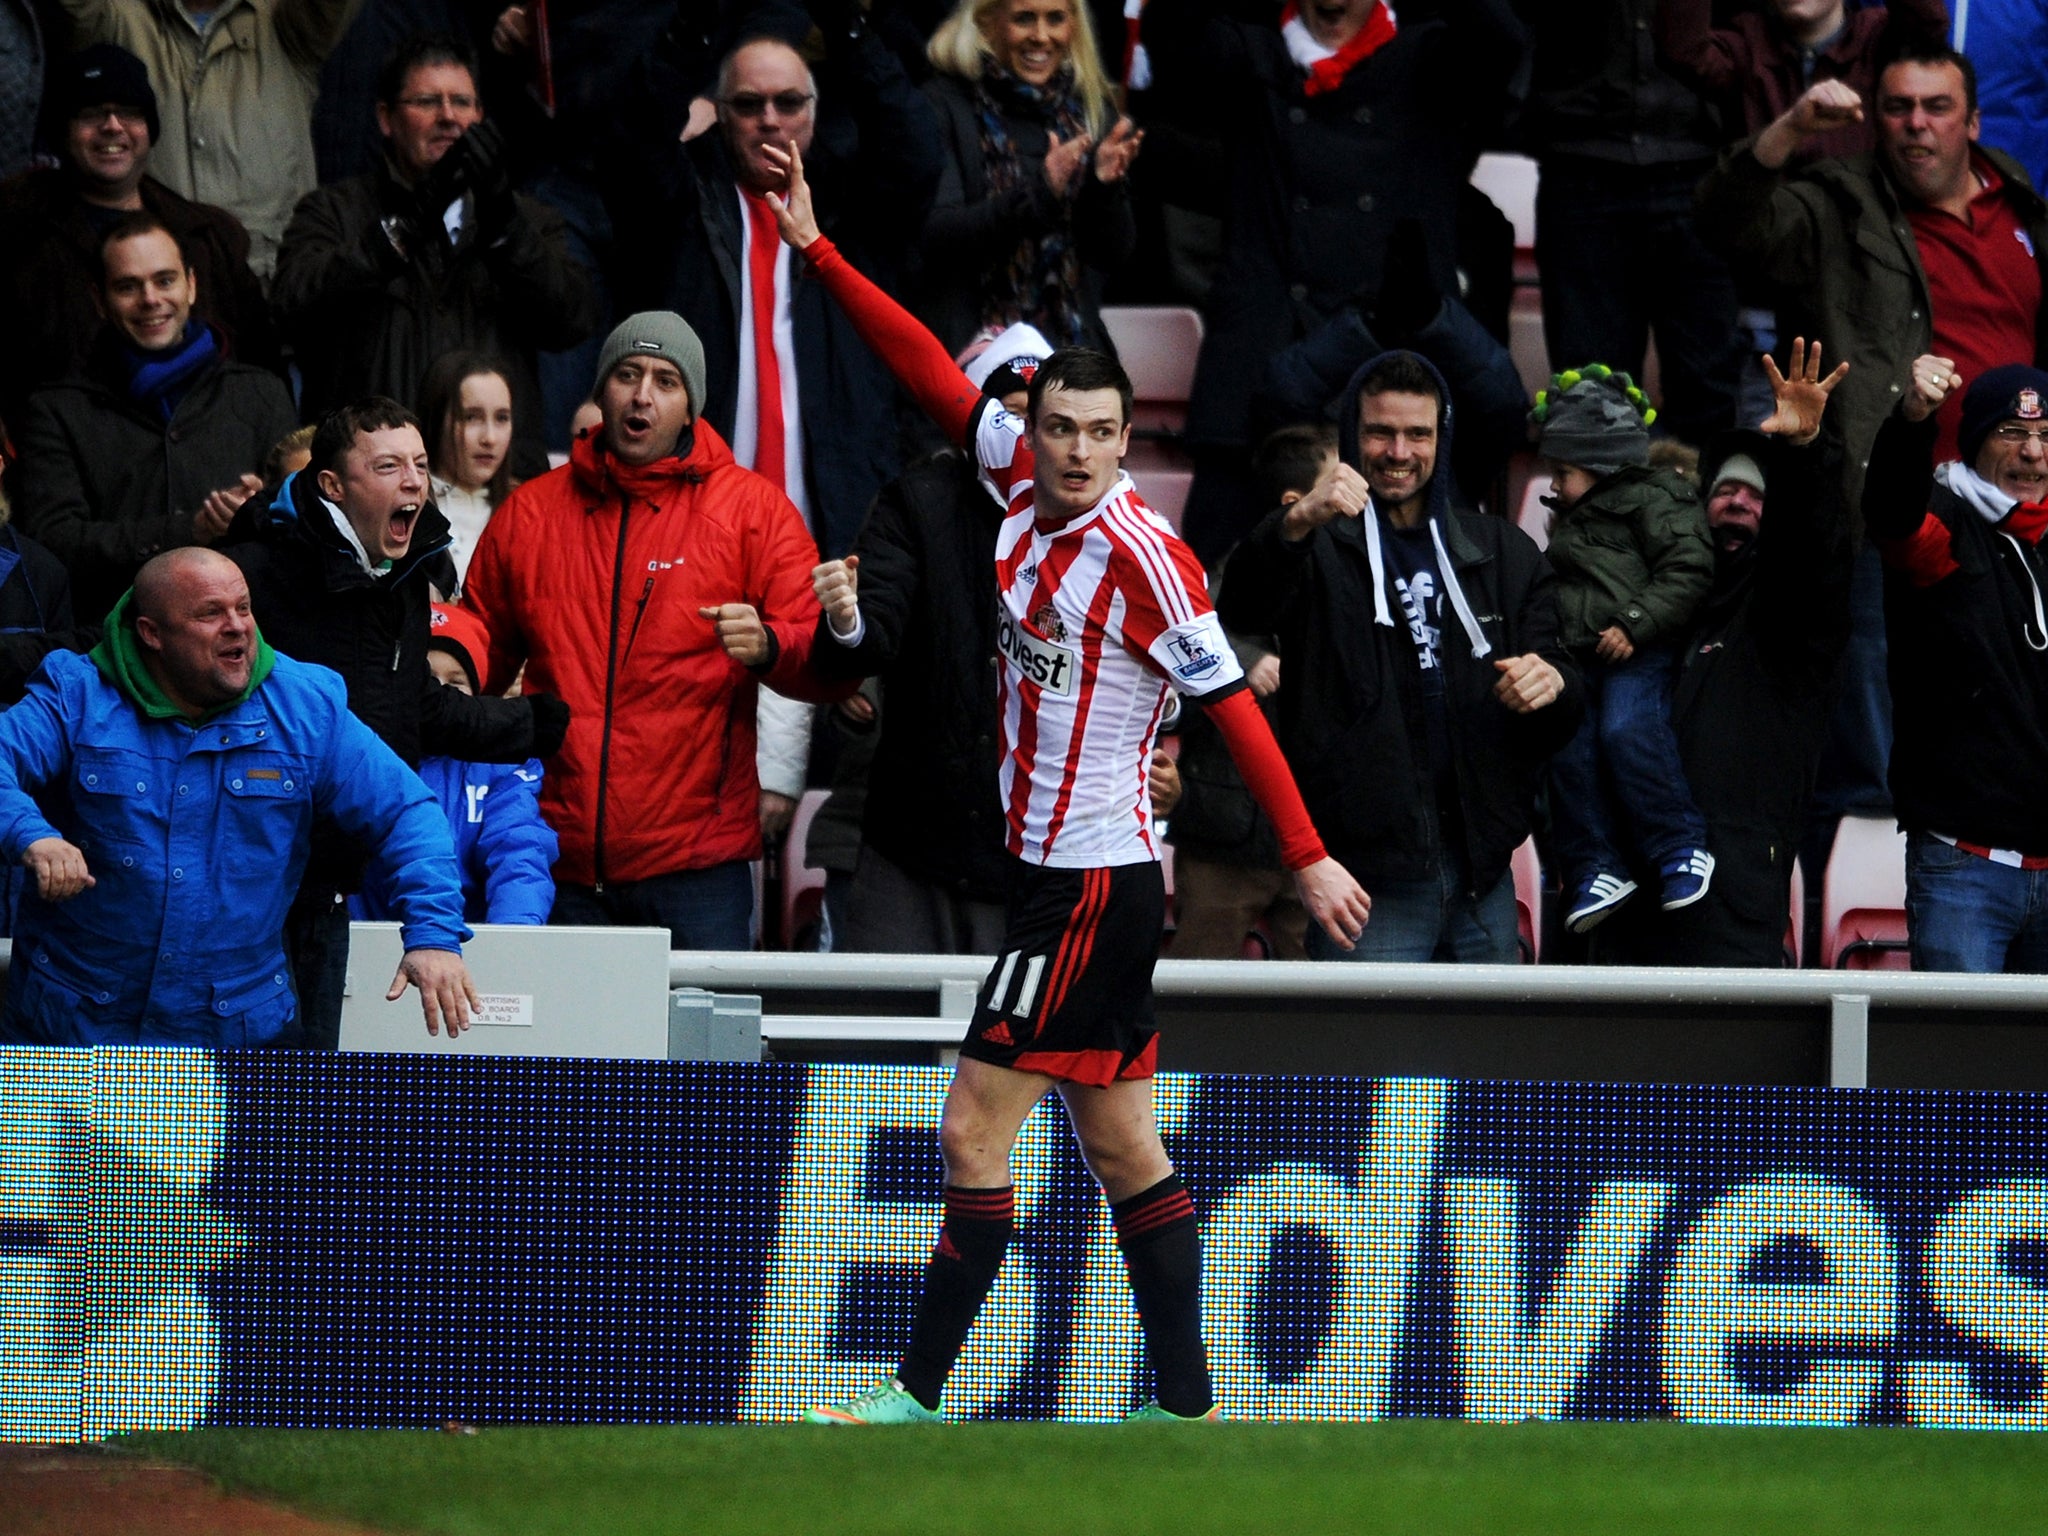 Adam Johnson celebrates after pulling Sunderland level with Southampton